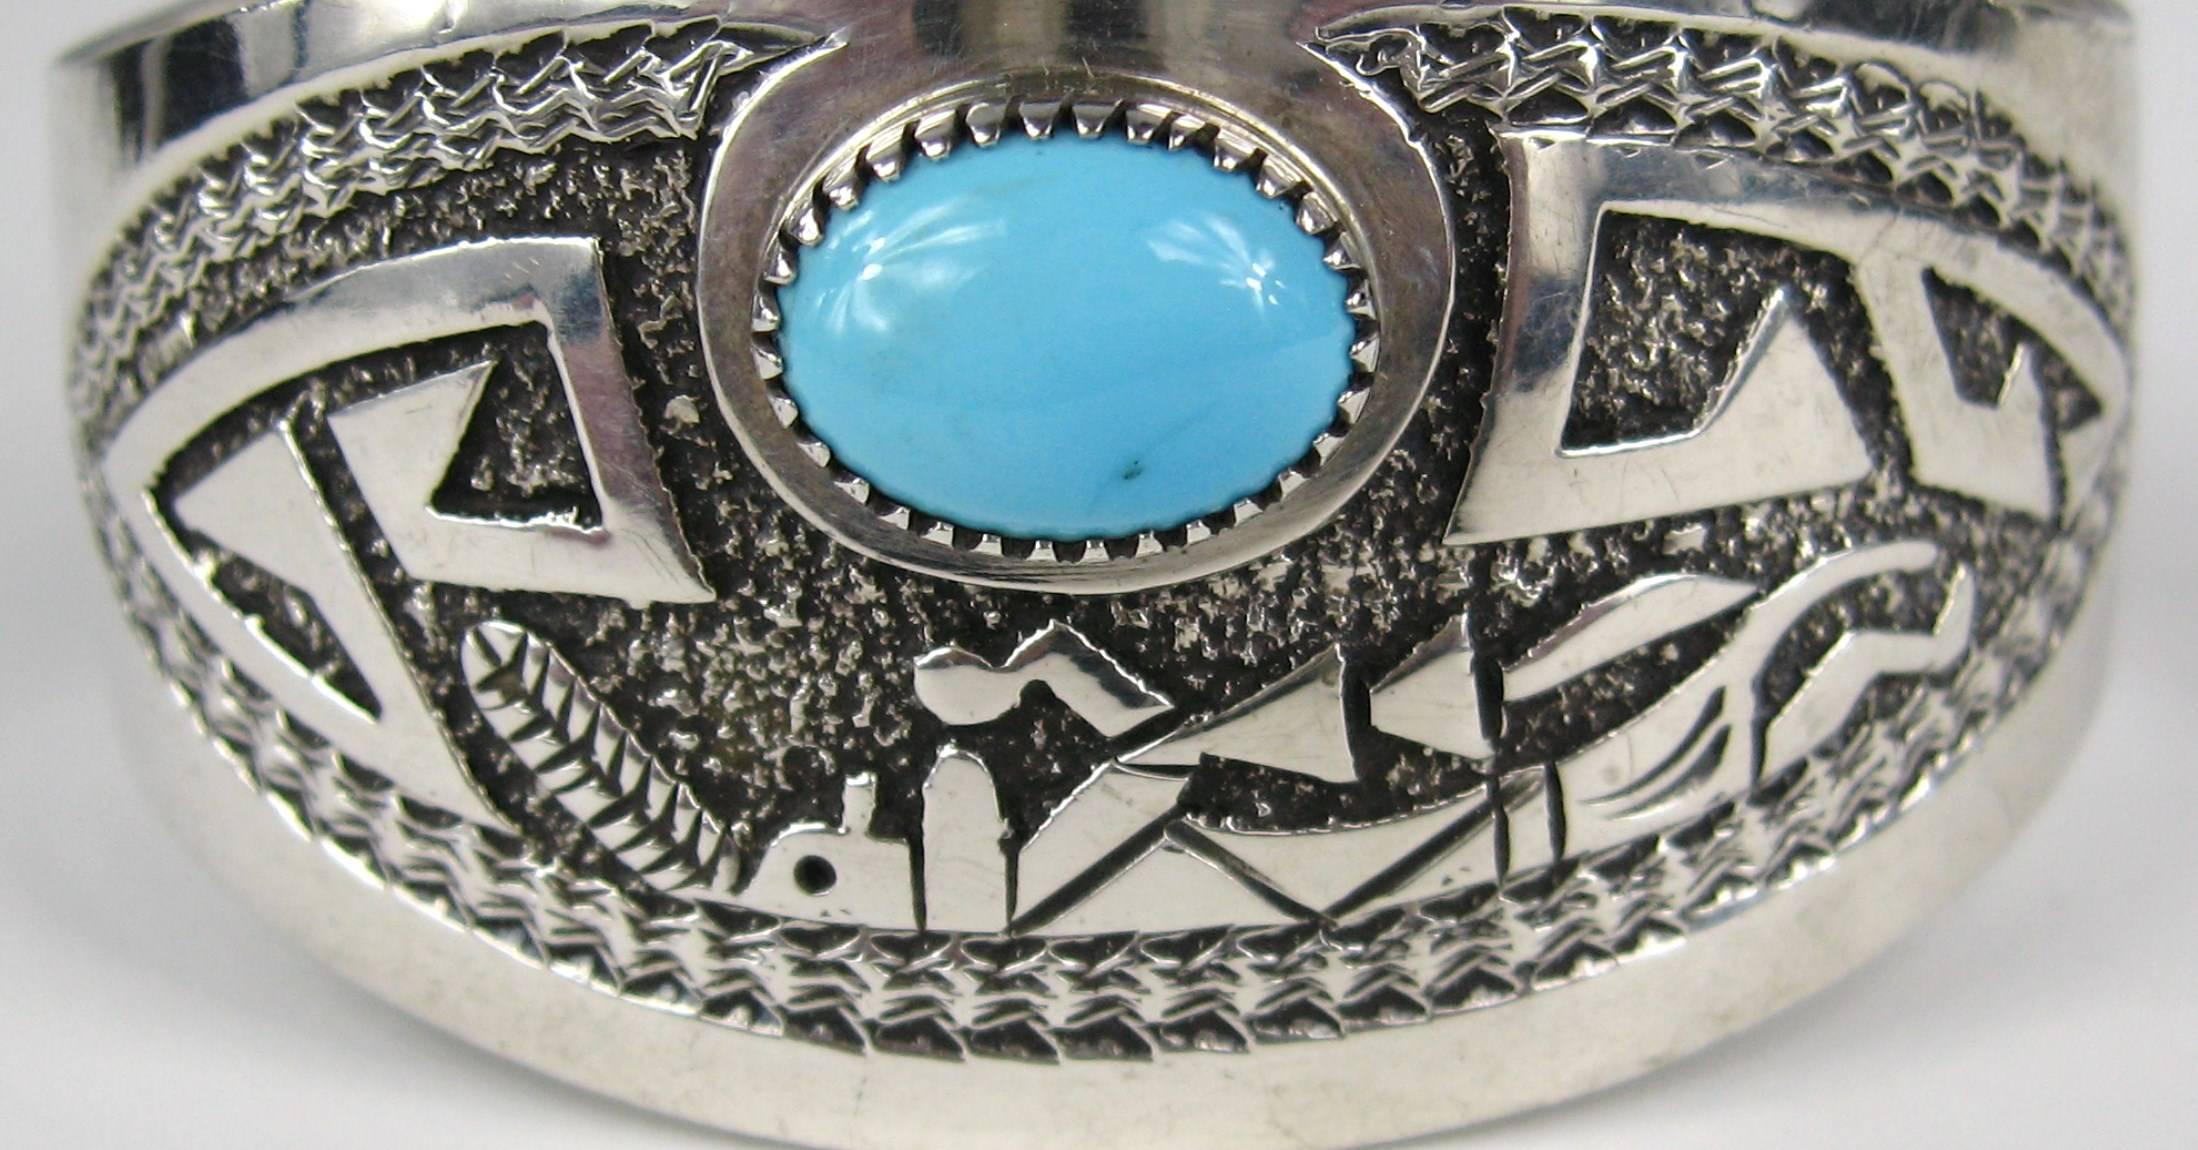 Atemberaubendes Navajo-Sterling-Silber-Armband. Eingravierte Tänzerin. Hat eine große Lünette Set Türkis Stein. Gibb gestempelt. Mit einer Breite von 1,32 Zoll und einer Öffnung von 0,96 Zoll. Passt für ein Handgelenk von 6,5 bis 7 Zoll und kann ein